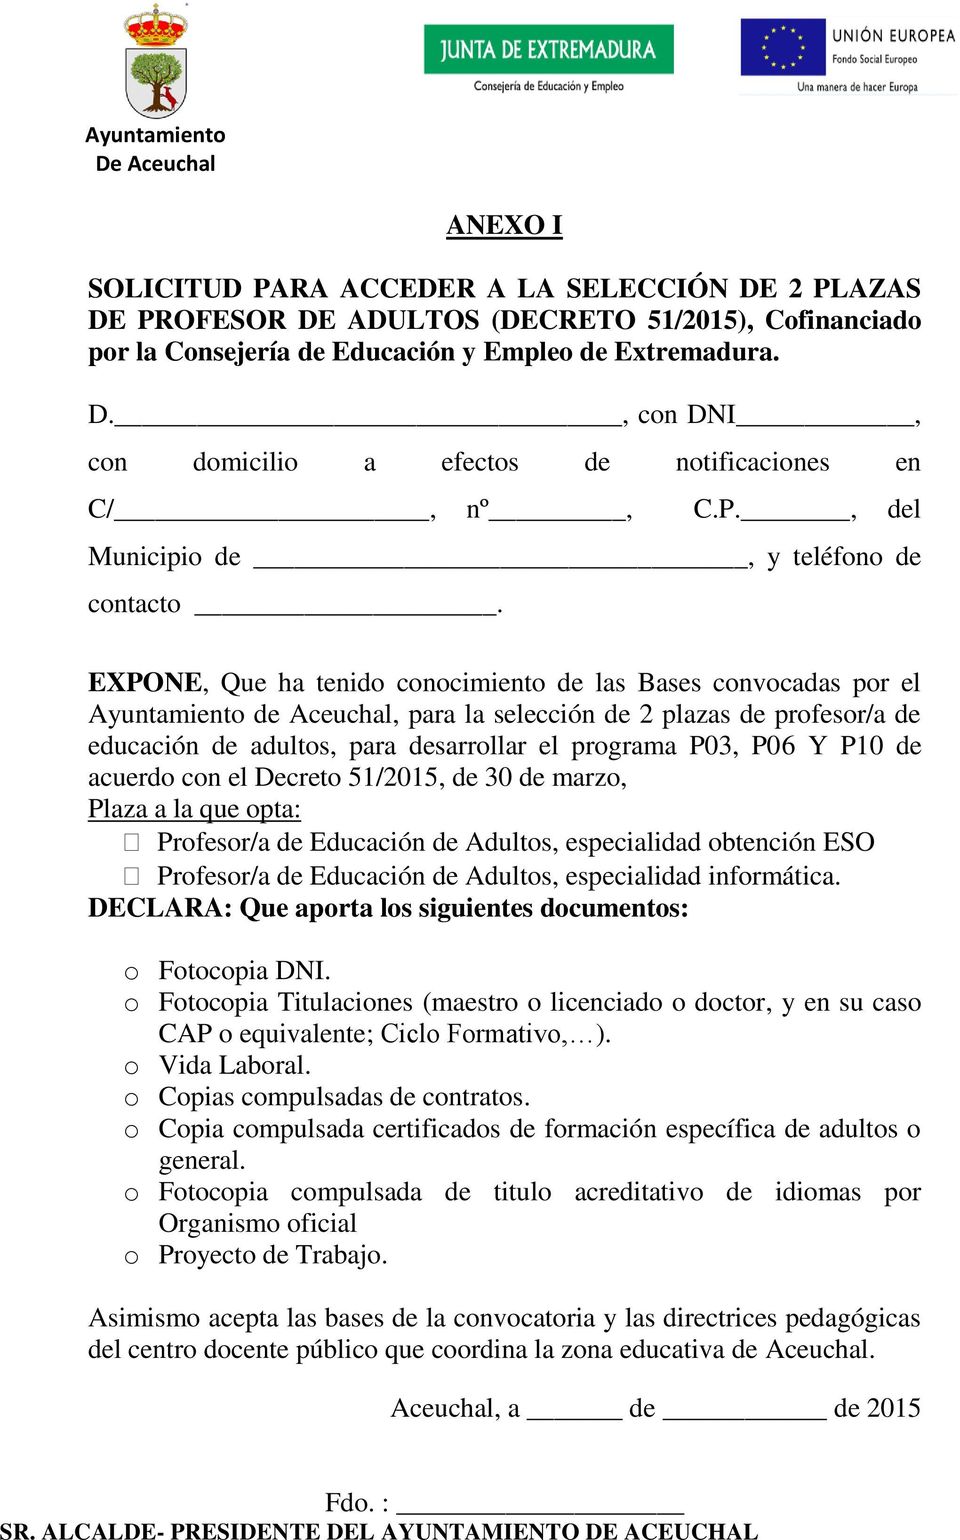 EXPONE, Que ha tenido conocimiento de las Bases convocadas por el Ayuntamiento de Aceuchal, para la selección de 2 plazas de profesor/a de educación de adultos, para desarrollar el programa P03, P06